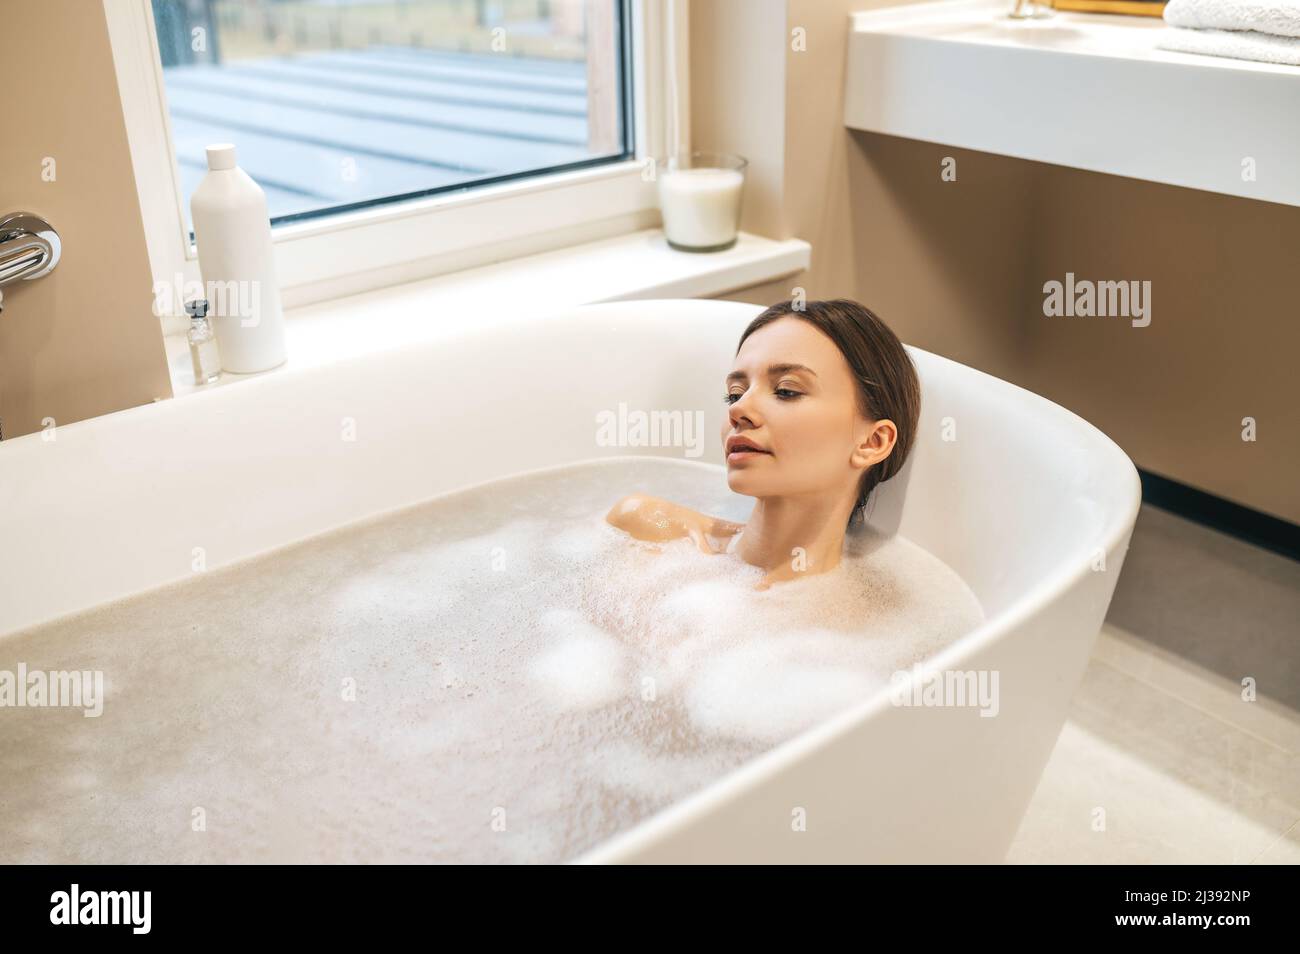 Bagno rilassante immagini e fotografie stock ad alta risoluzione - Alamy